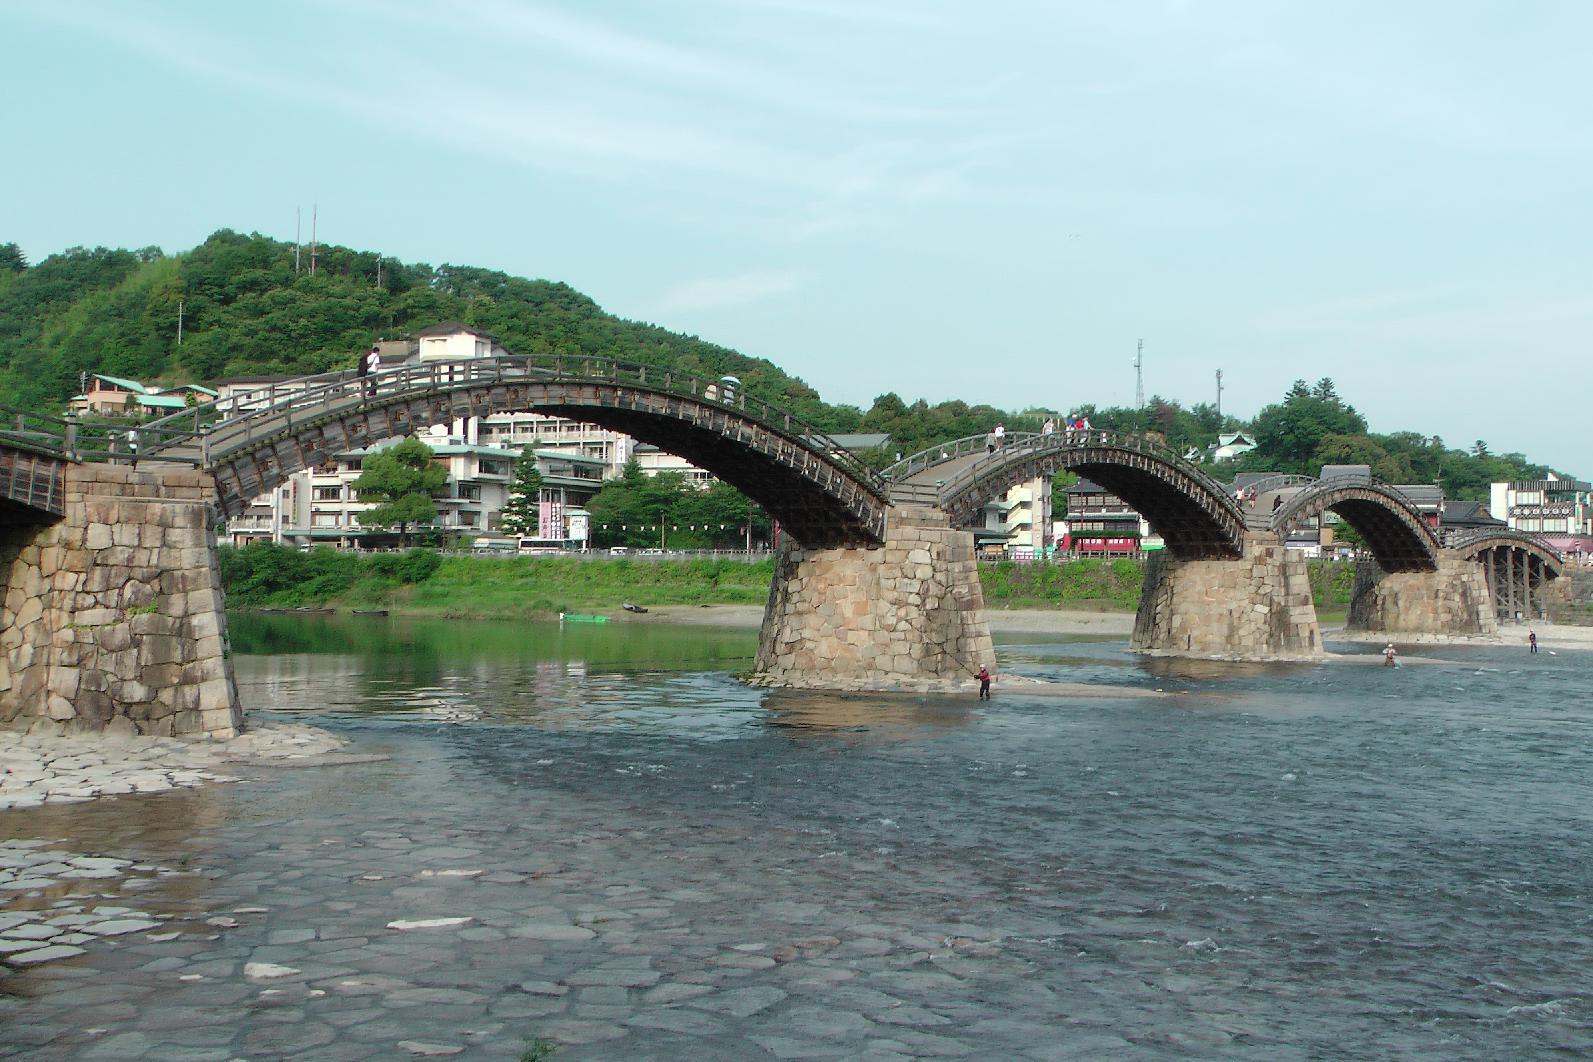 Kintai Bridge